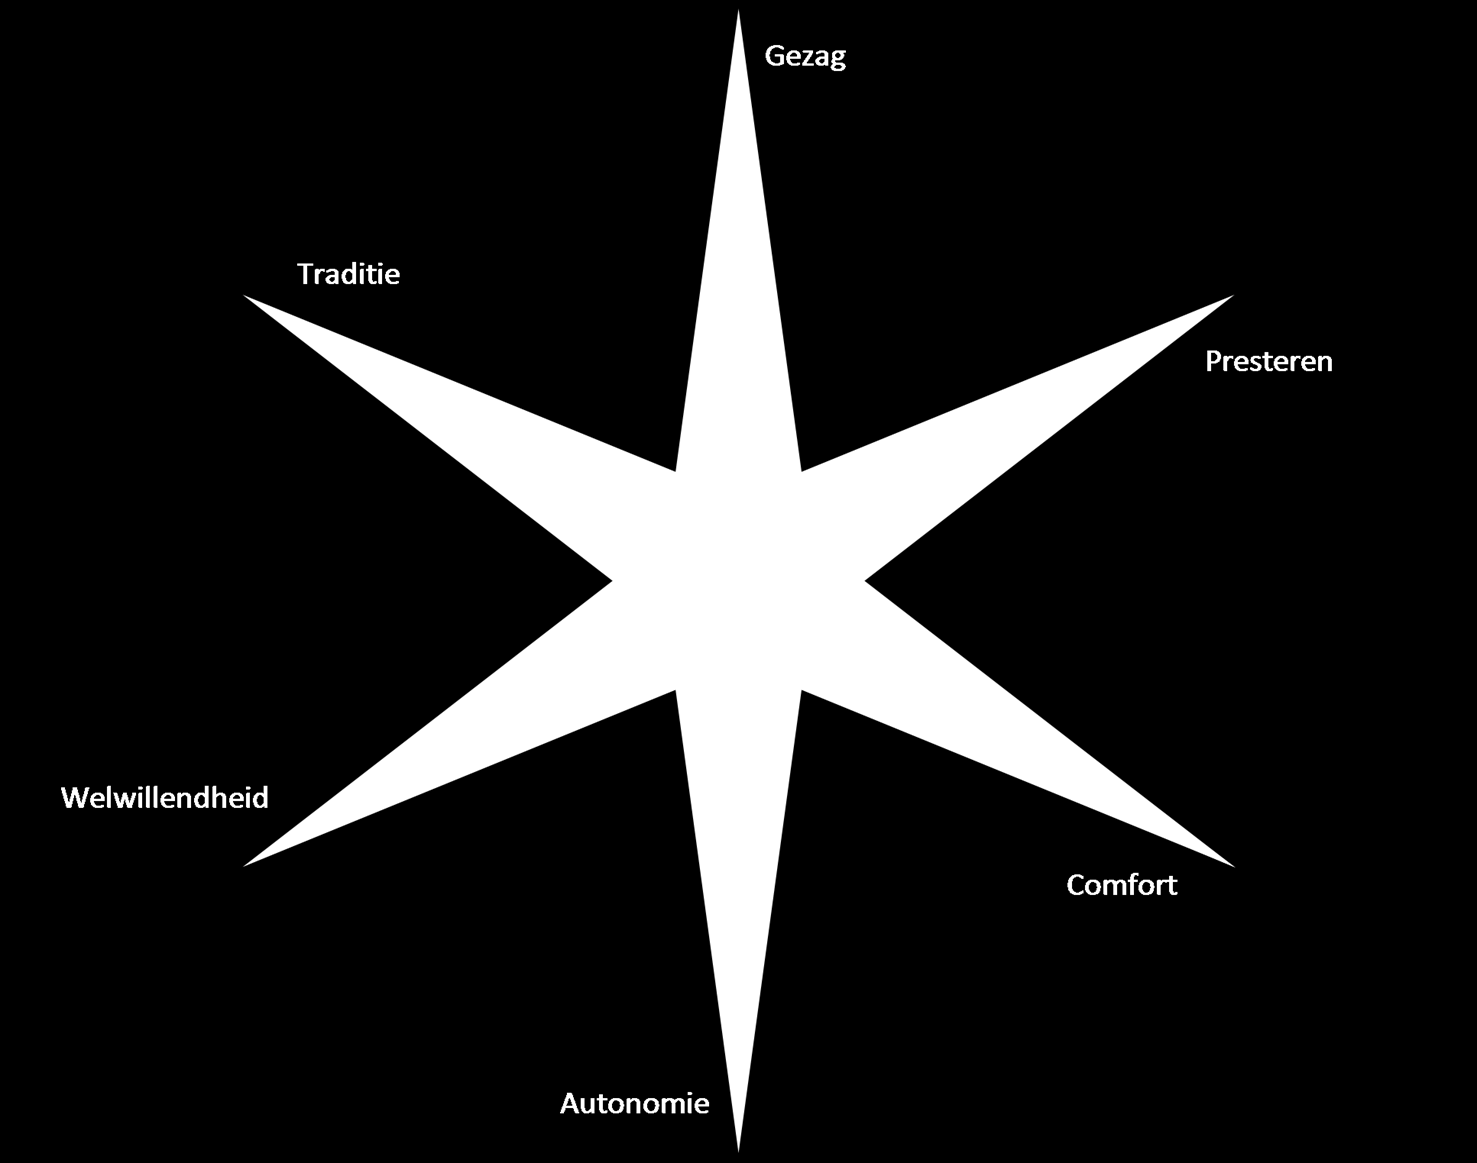 In deze figuur zie je jouw voorkeur voor de organisatietypen. Hoe meer de punt van de ster is ingekleurd, hoe meer jouw voorkeur uitgaat naar dit type organisatie.